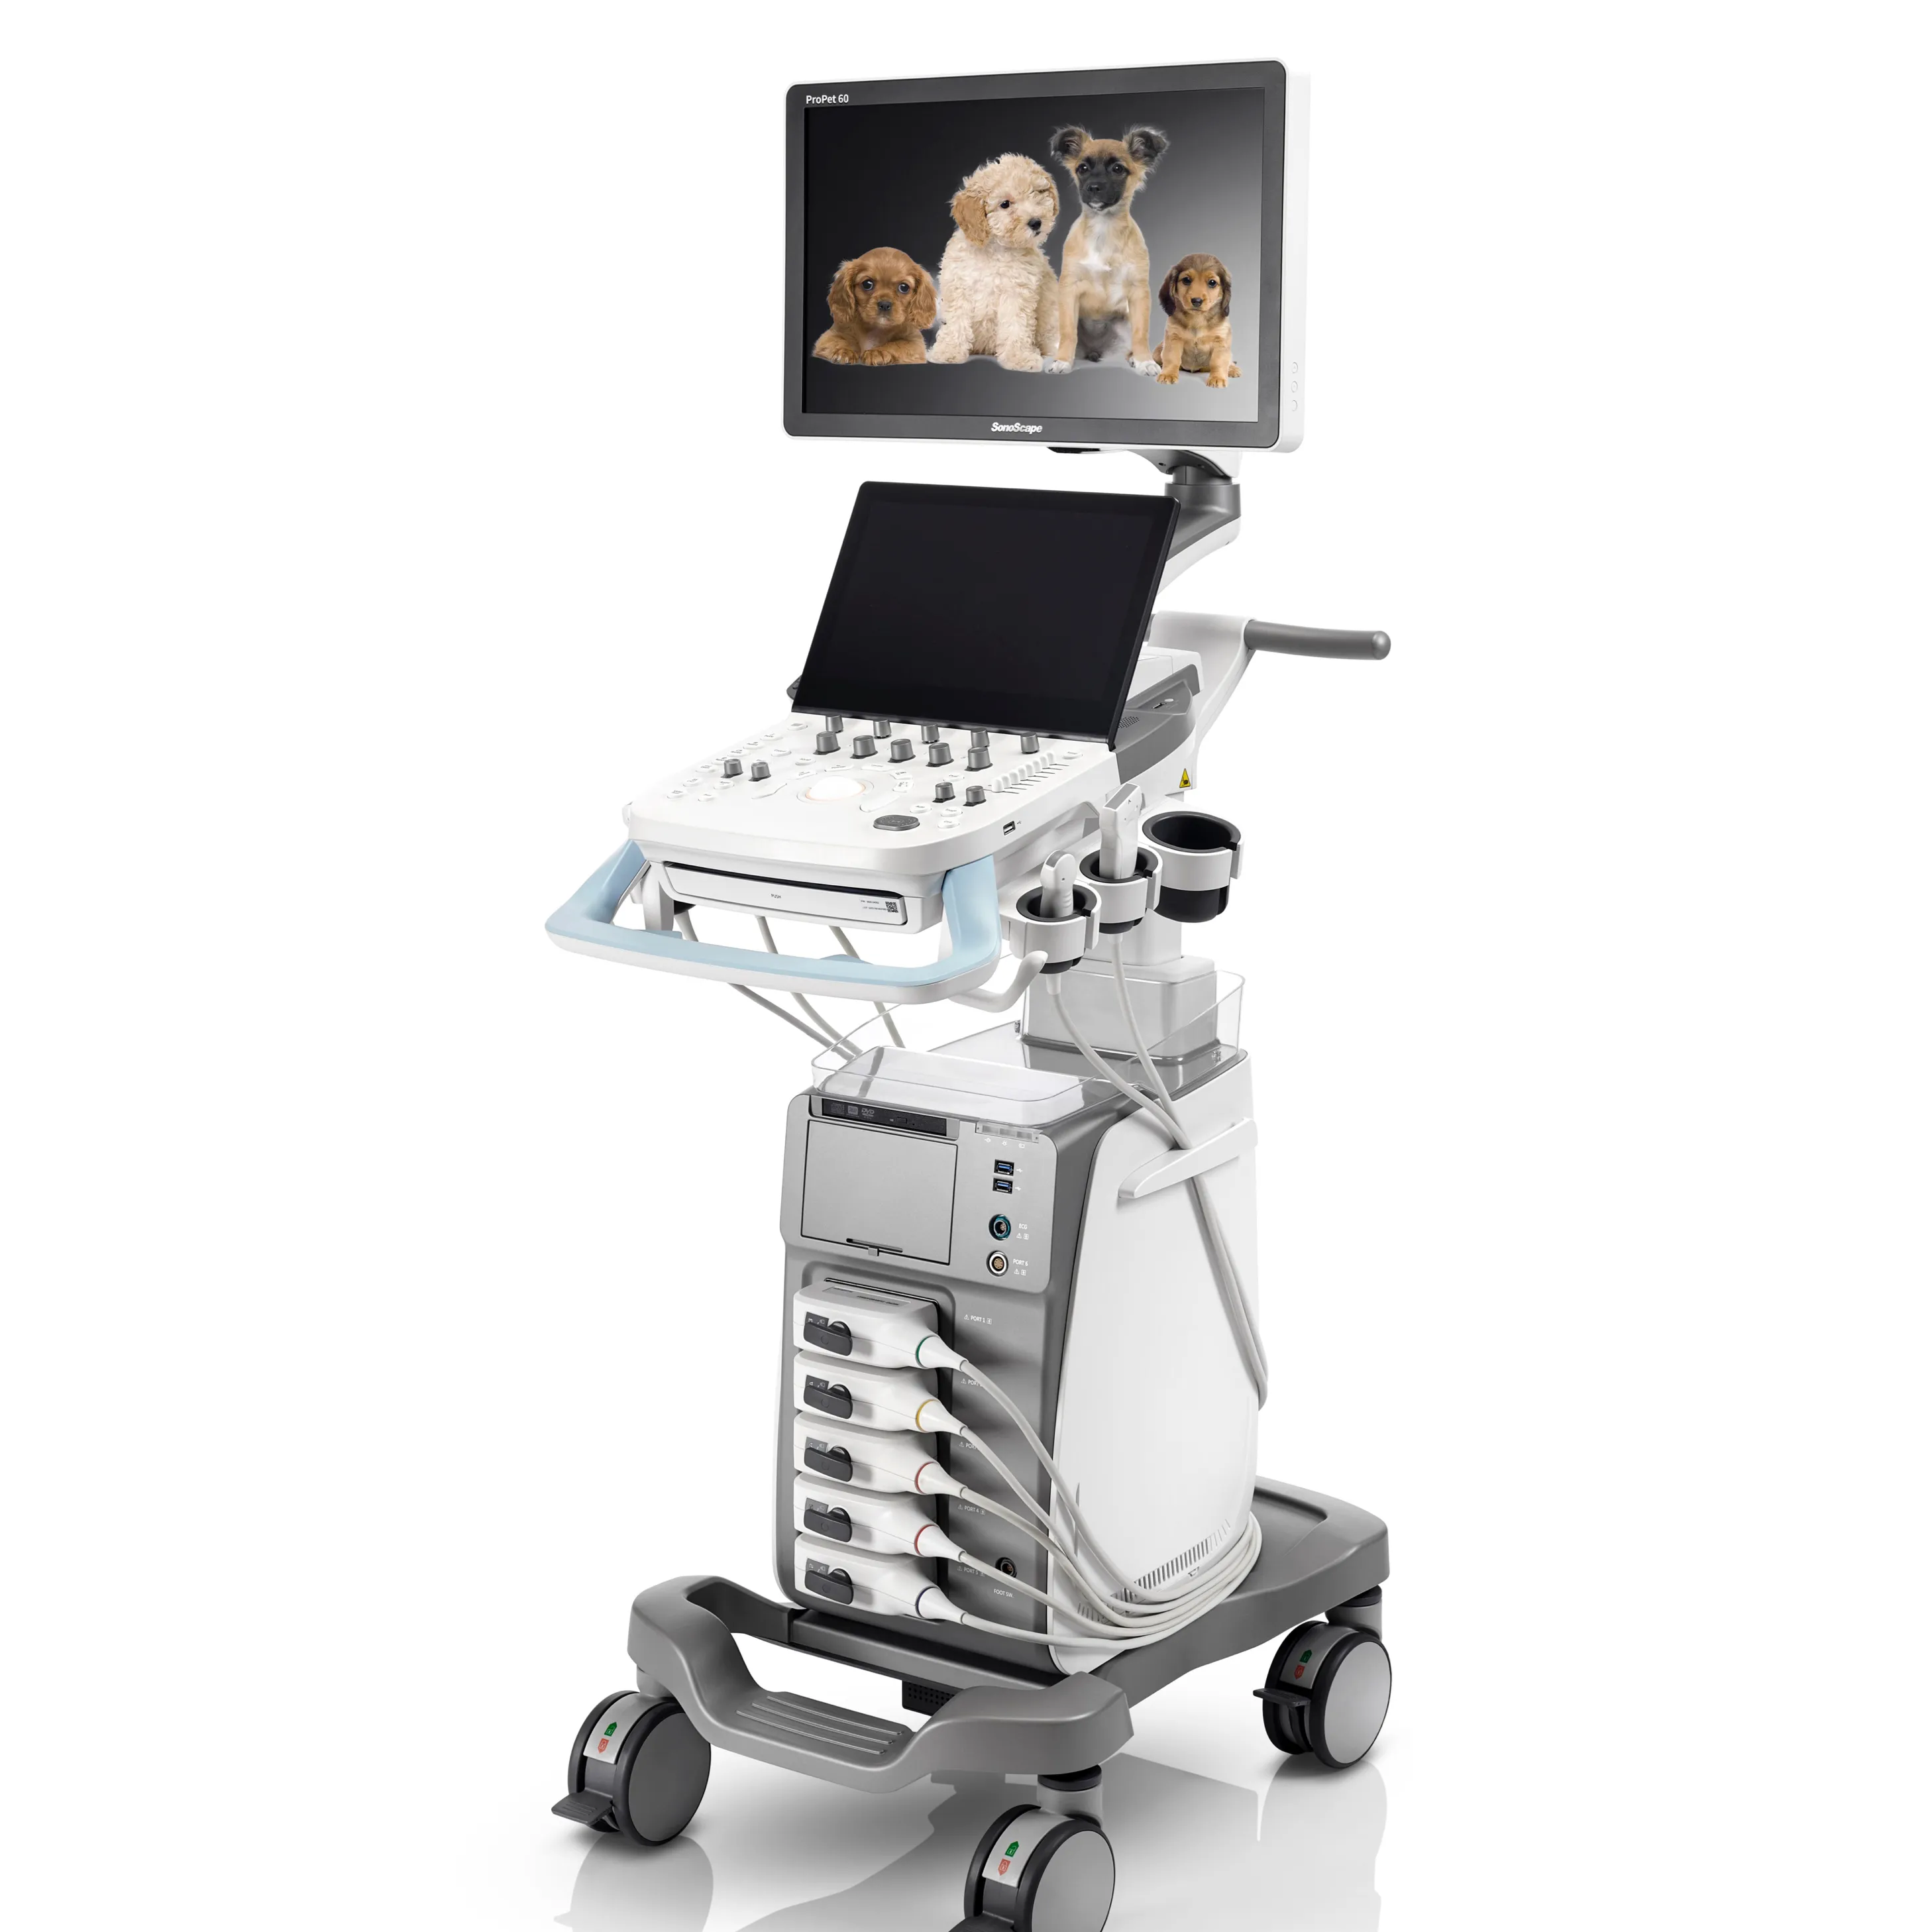 Sonosape-máquina de ultrasonido veterinario profesional propet60, para uso animal con sonda rectal microconvexa